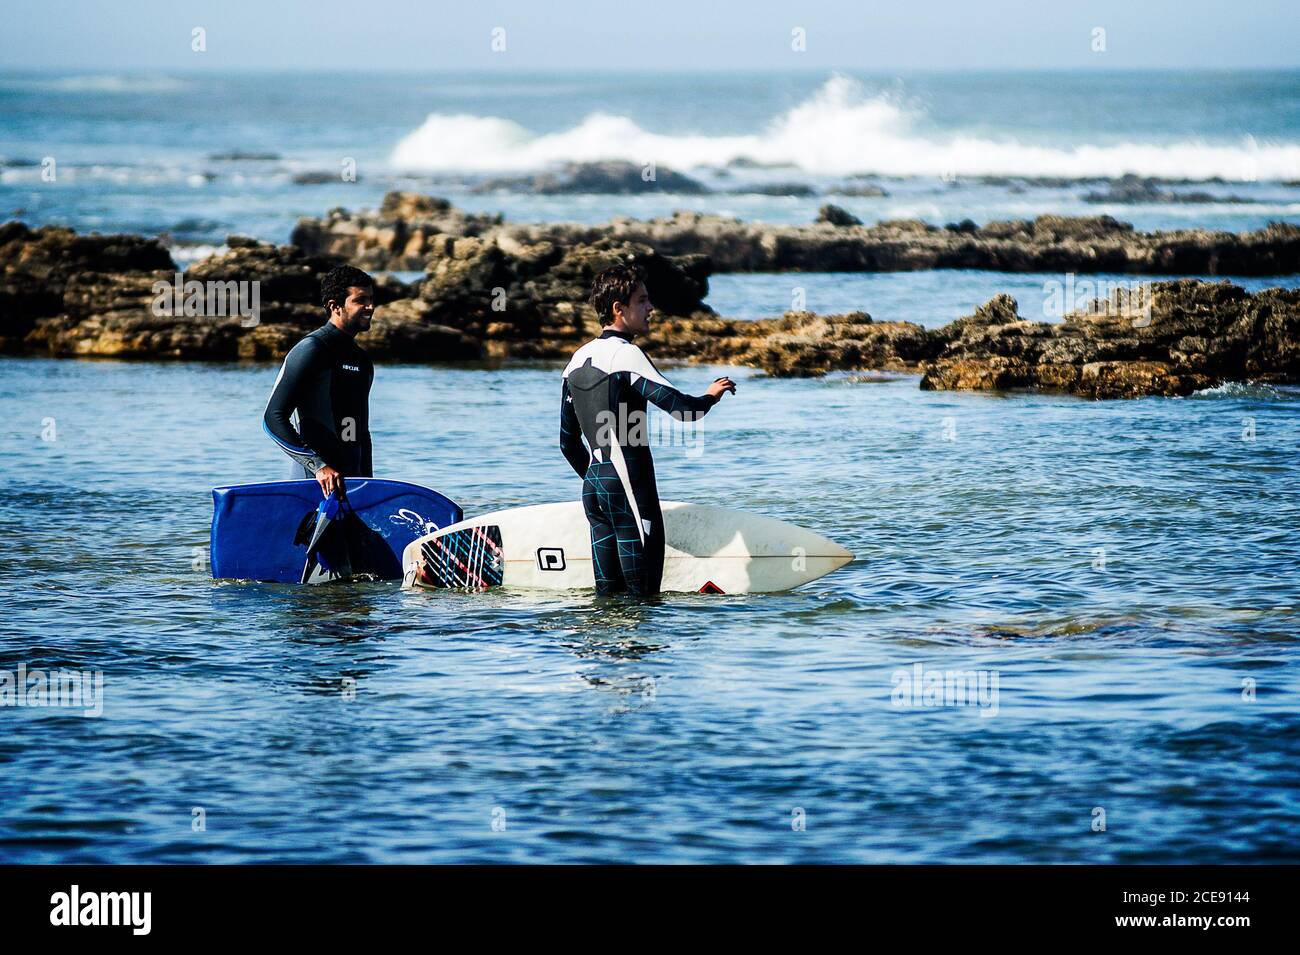 El Jadida - Maroc; 09-26-2012: Deux amis qui parlent pendant qu'ils sont prêts pour le surf Banque D'Images